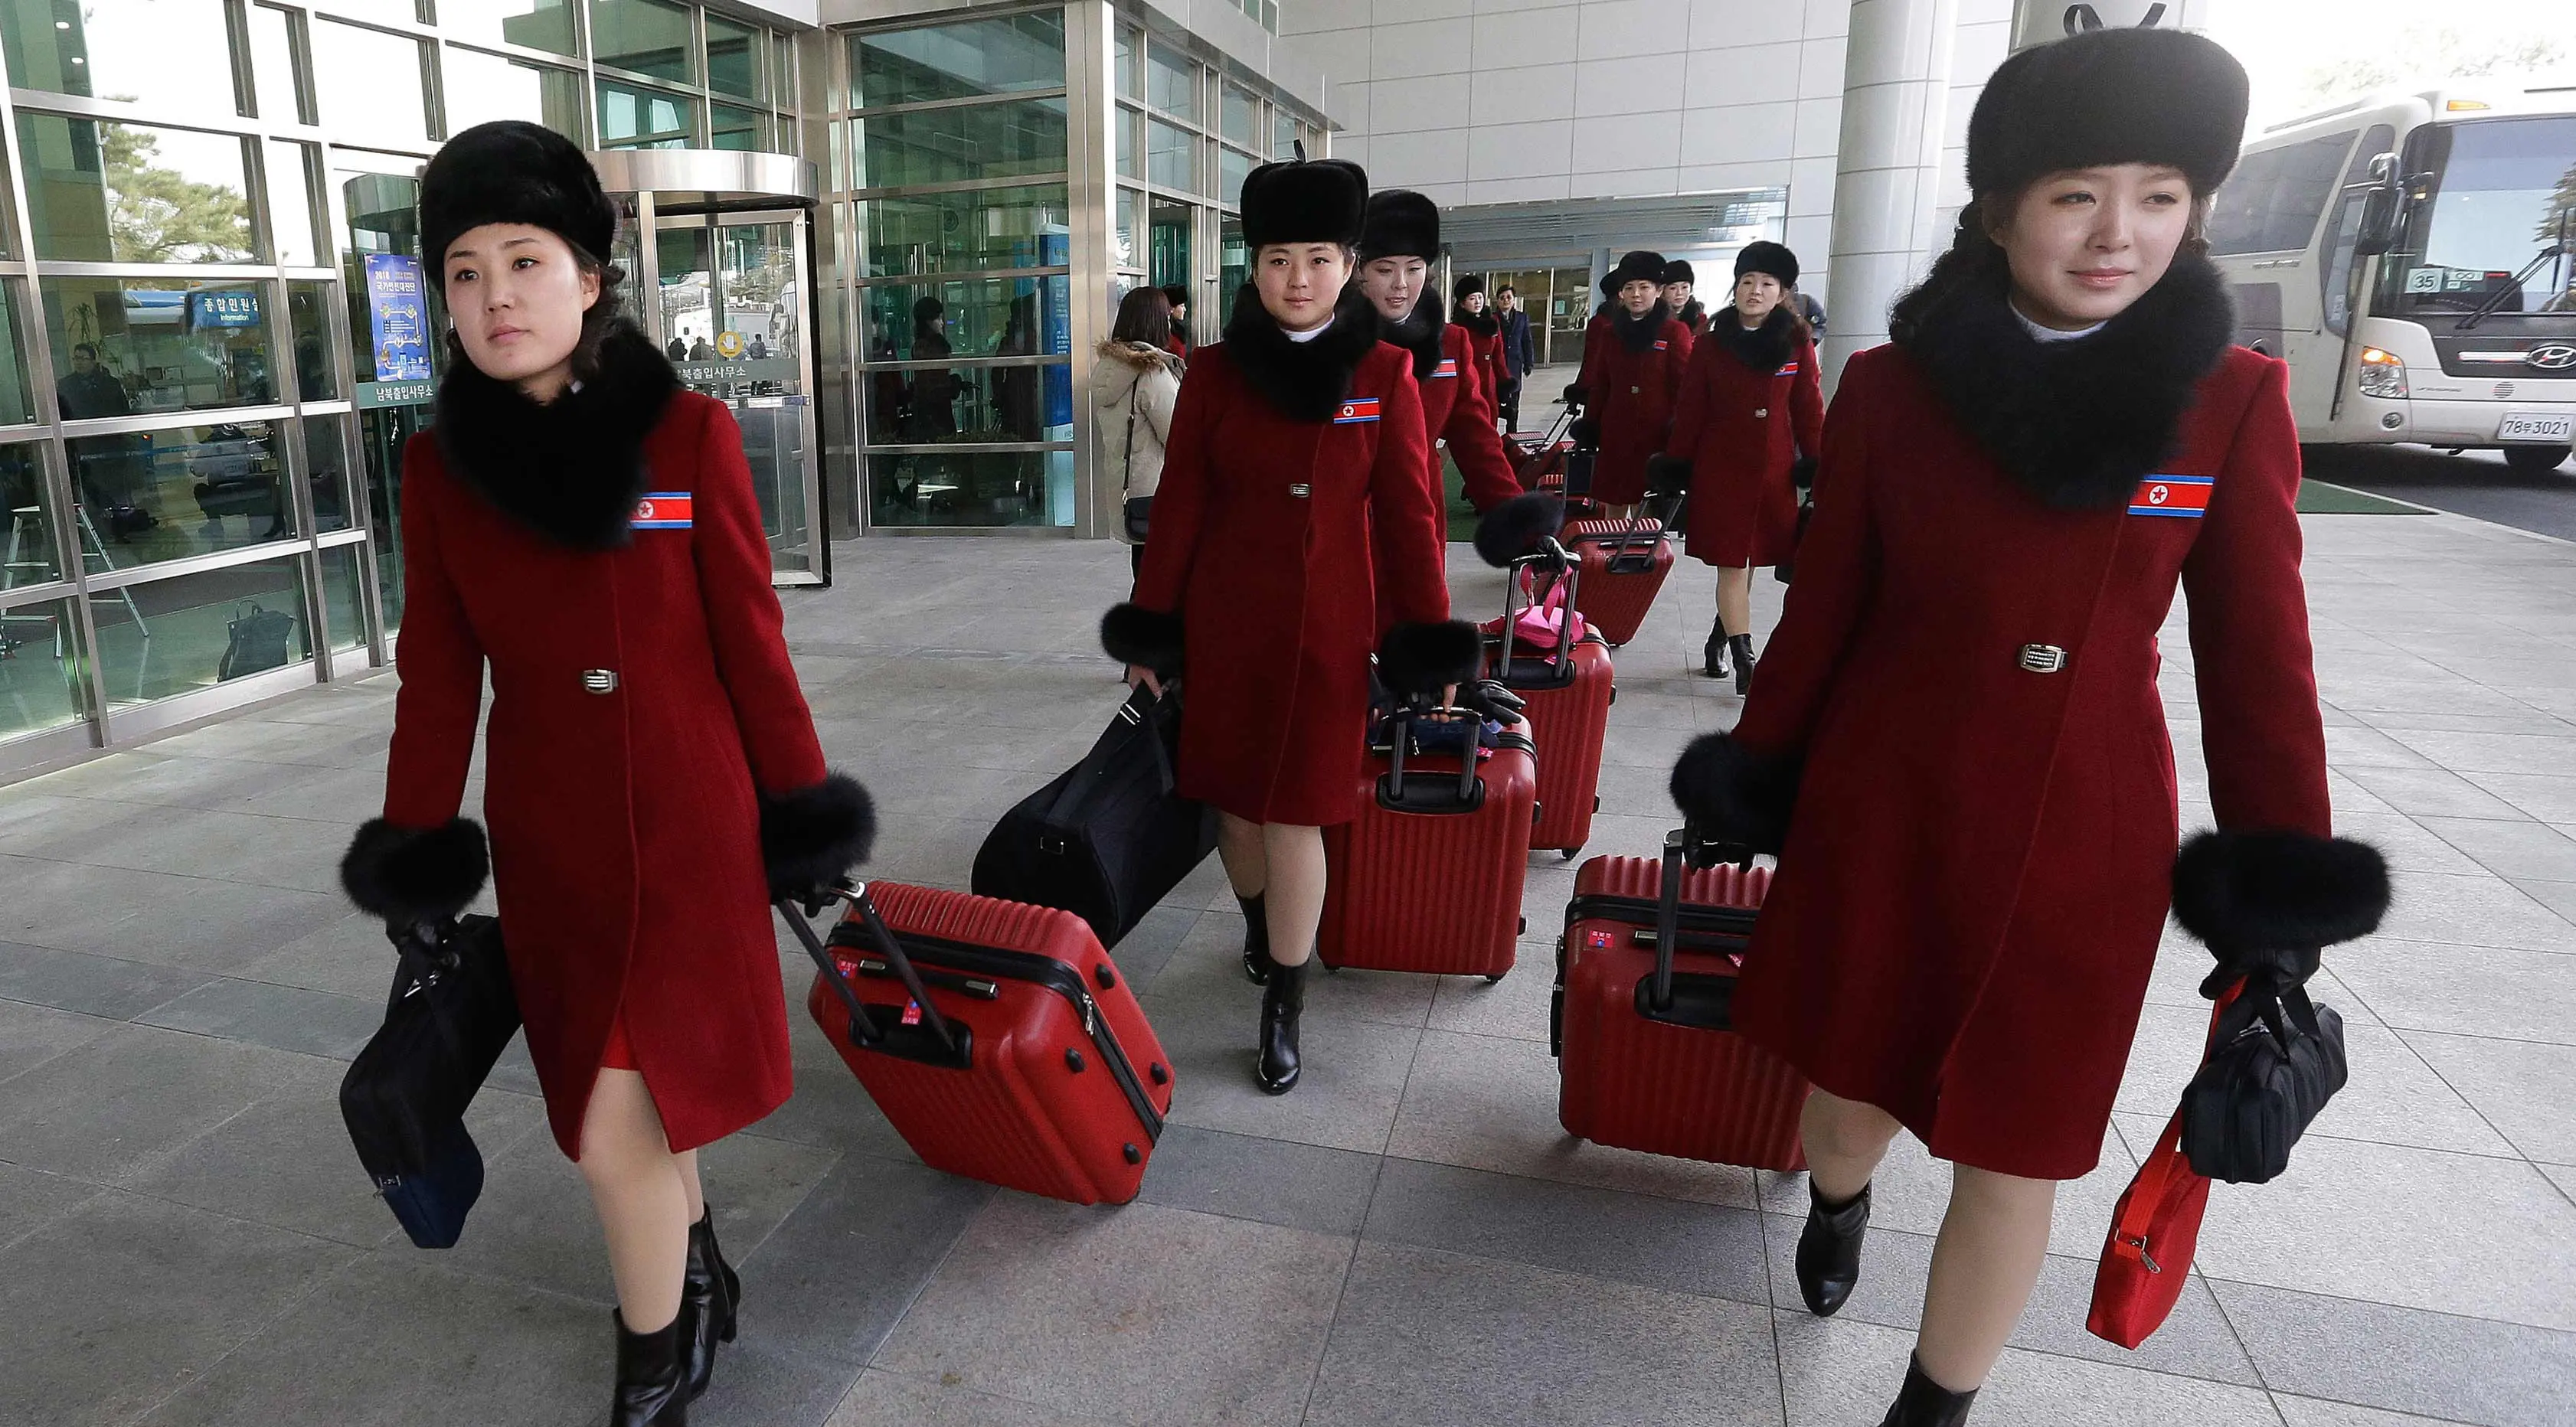 Tim pemandu sorak Korea Utara tiba kantor transit Korea di dekat Zona Demiliterisasi di Paju, Korea Selatan, (7/2). Rombongan tim sorak Korut ini akan tampil di Olimpiade Musim Dingin Pyeongchang 2018. (AP Photo/Ahn Young-joon. Pool)